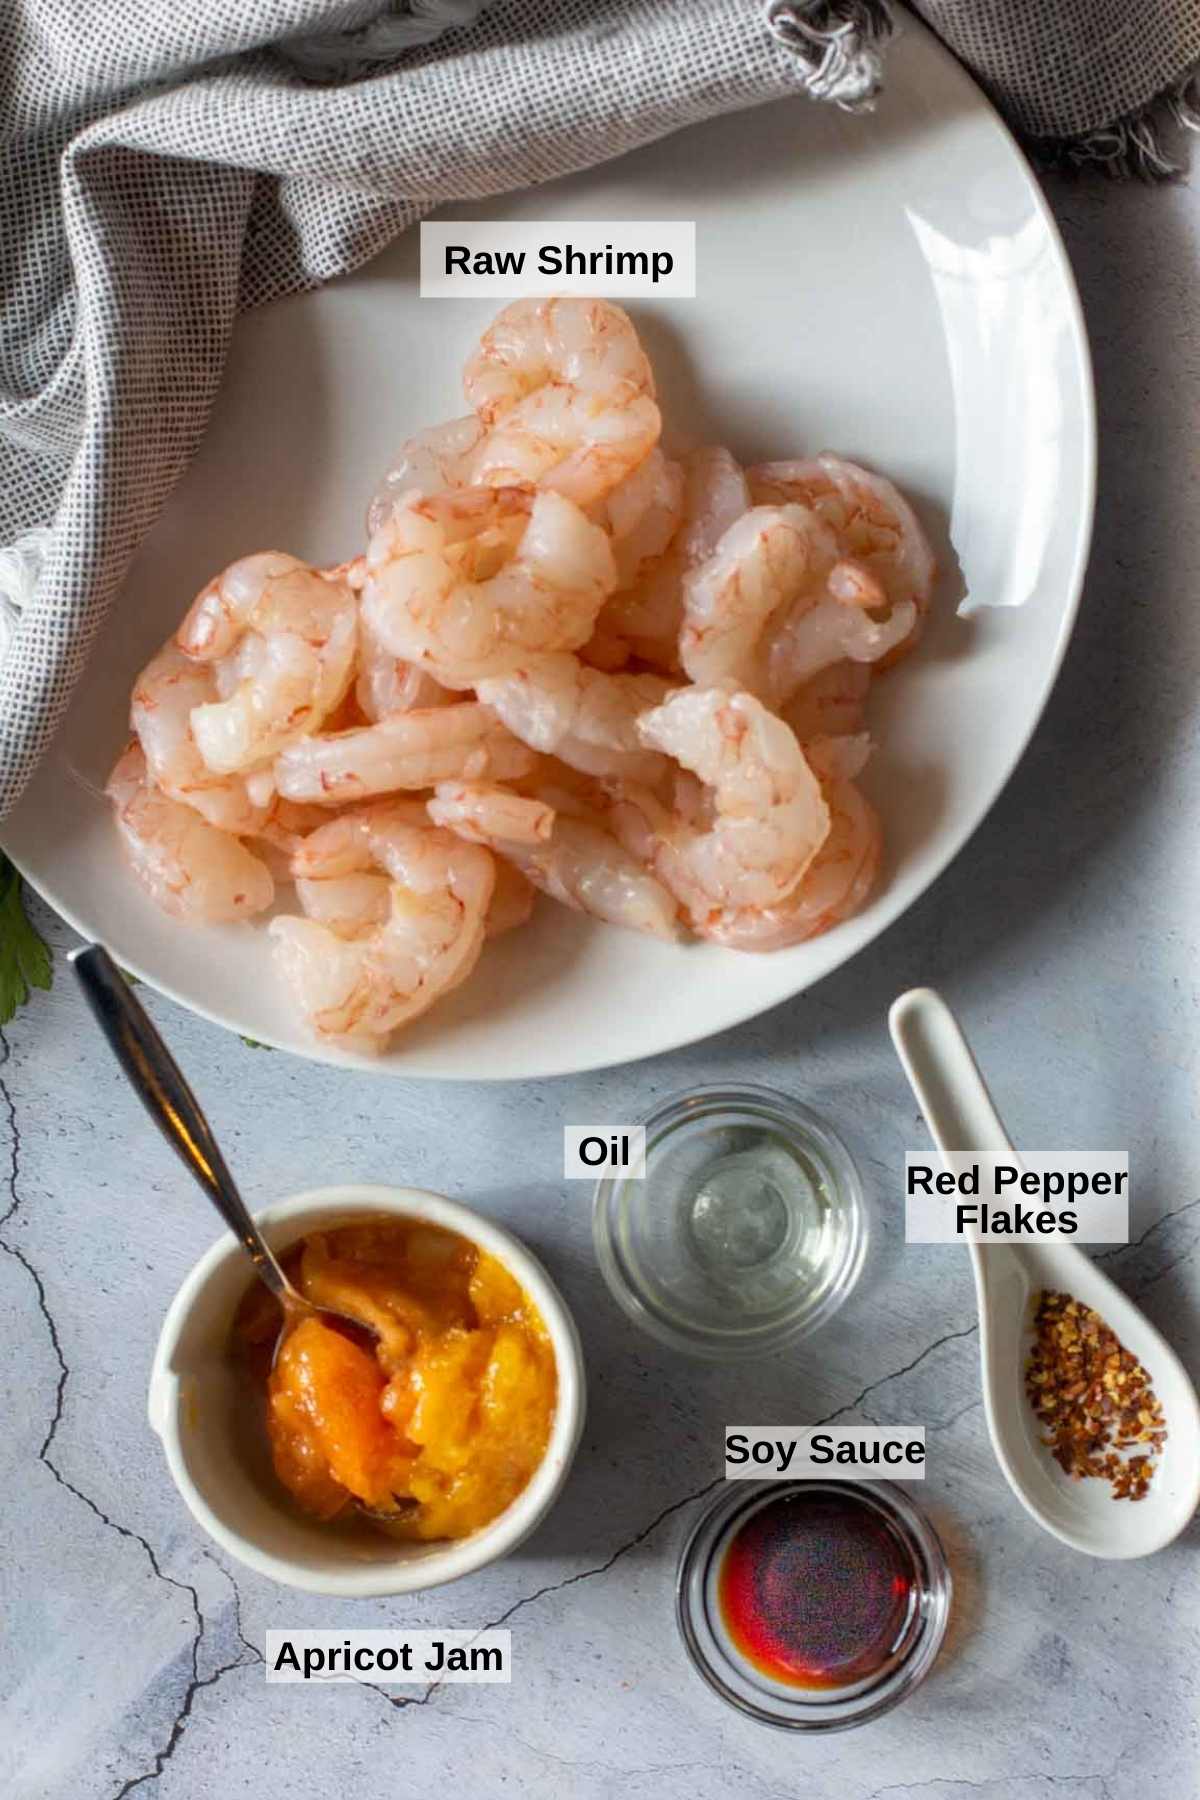 Ingredients to make easy firecracker shrimp.